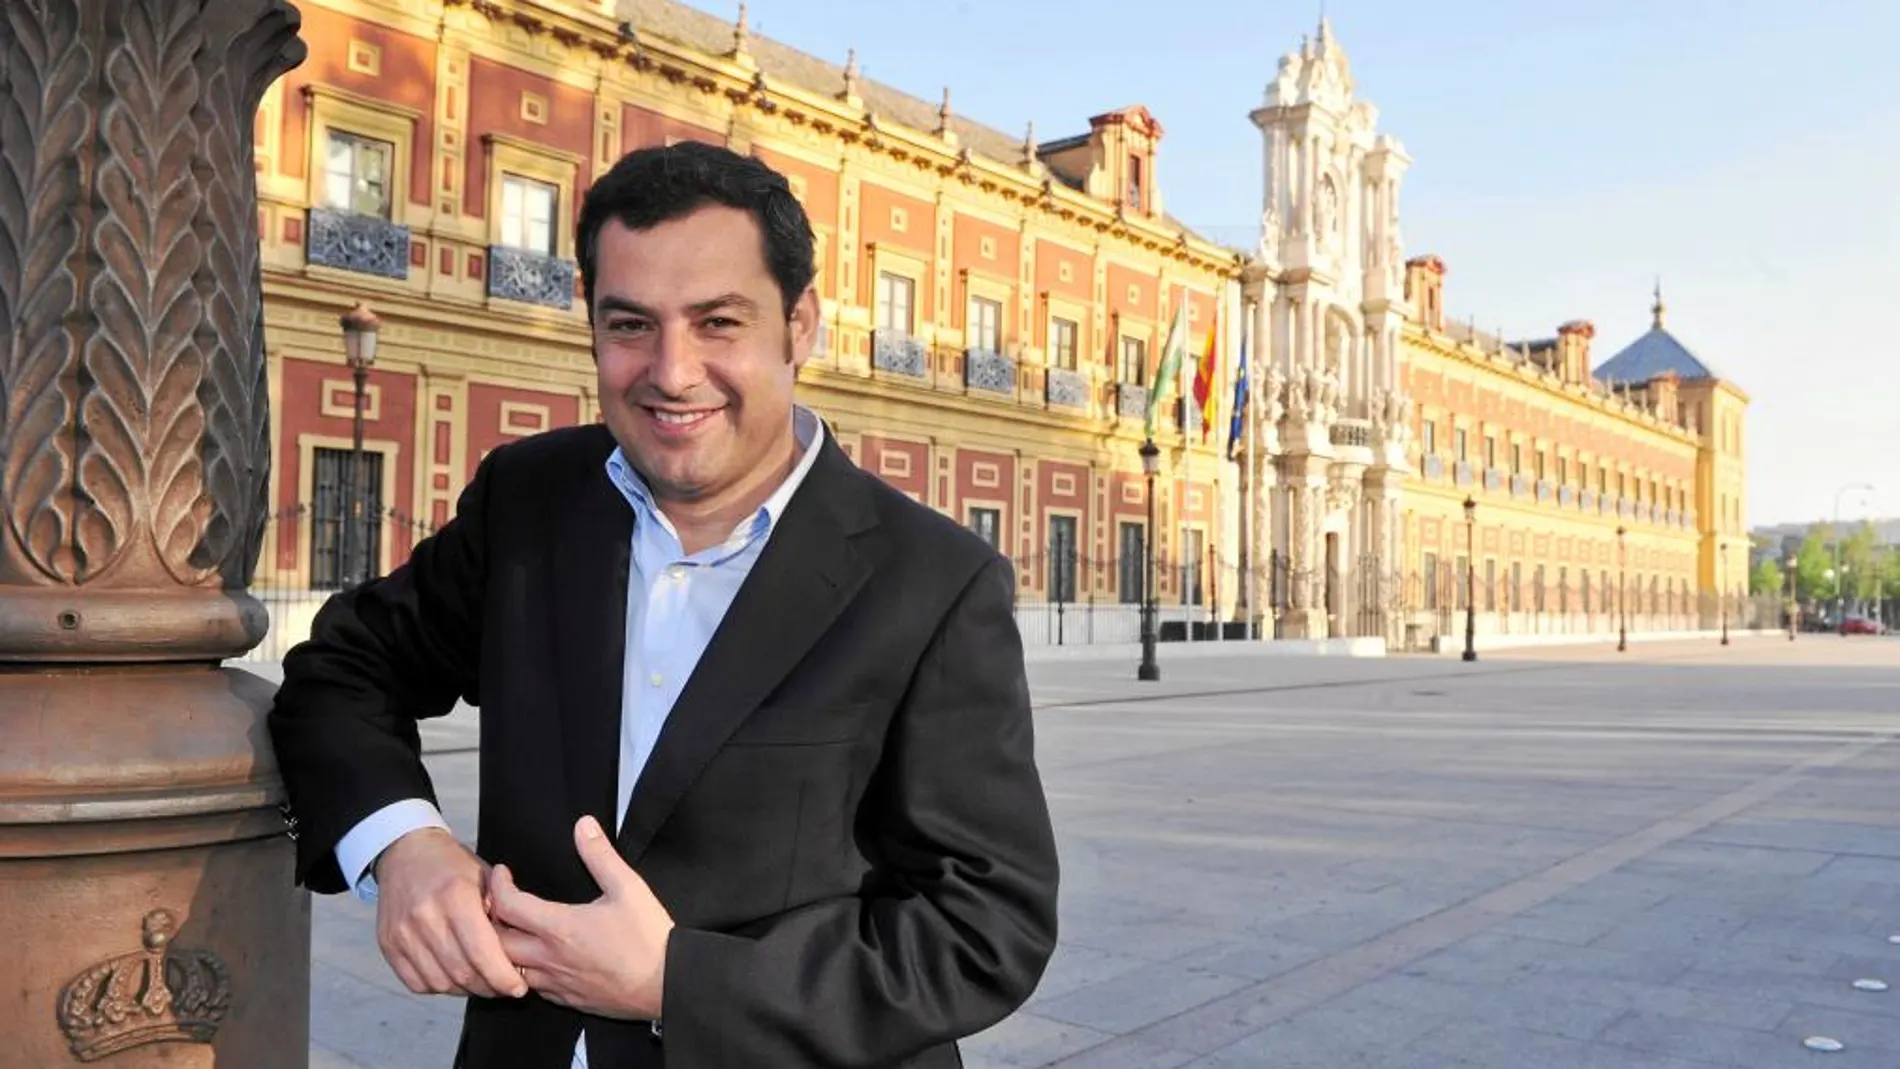 El candidato de los populares, ayer, junto al Palacio de San Telmo, sede de la Junta de Andalucía